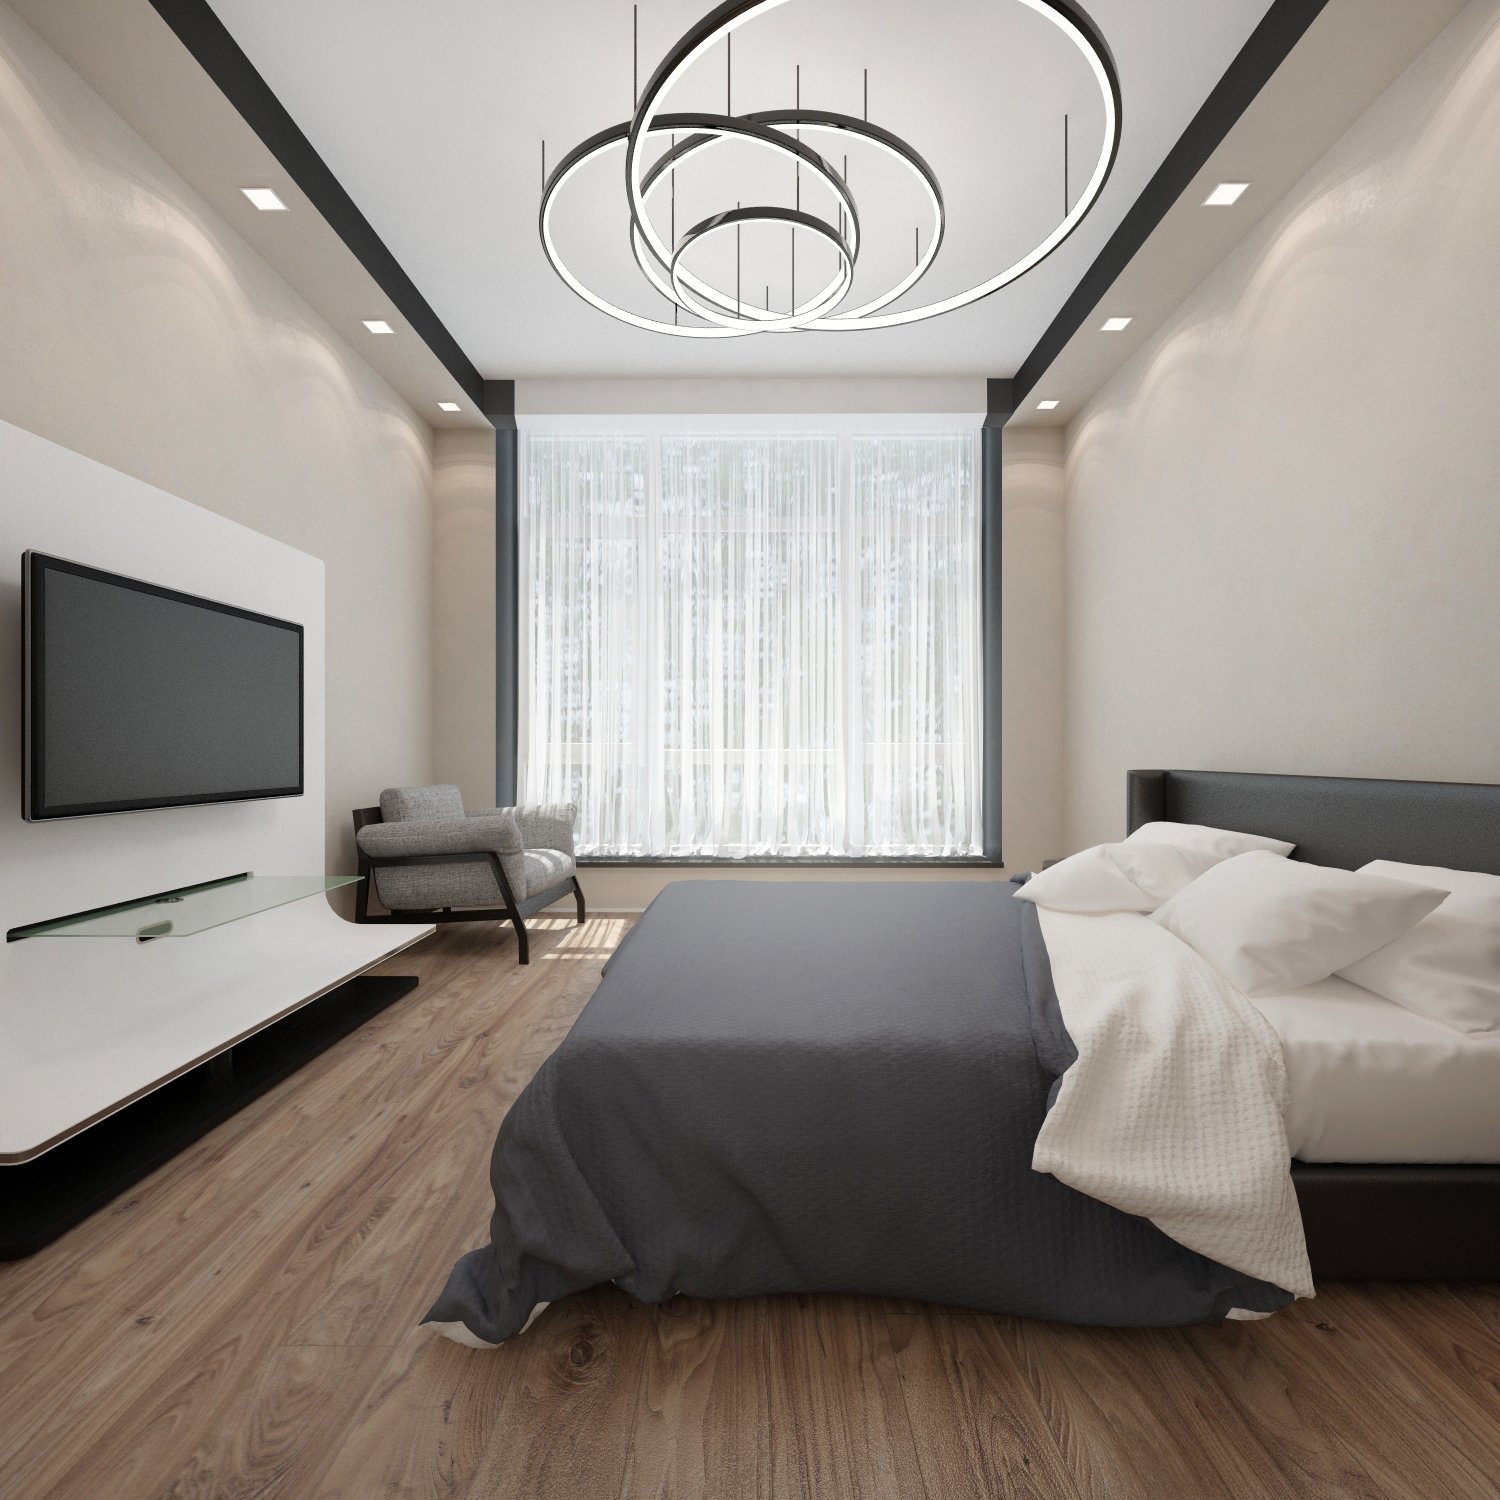 Натяжной потолок в спальне [80+ фото] — материалы, виды, цвета, варианты светильников